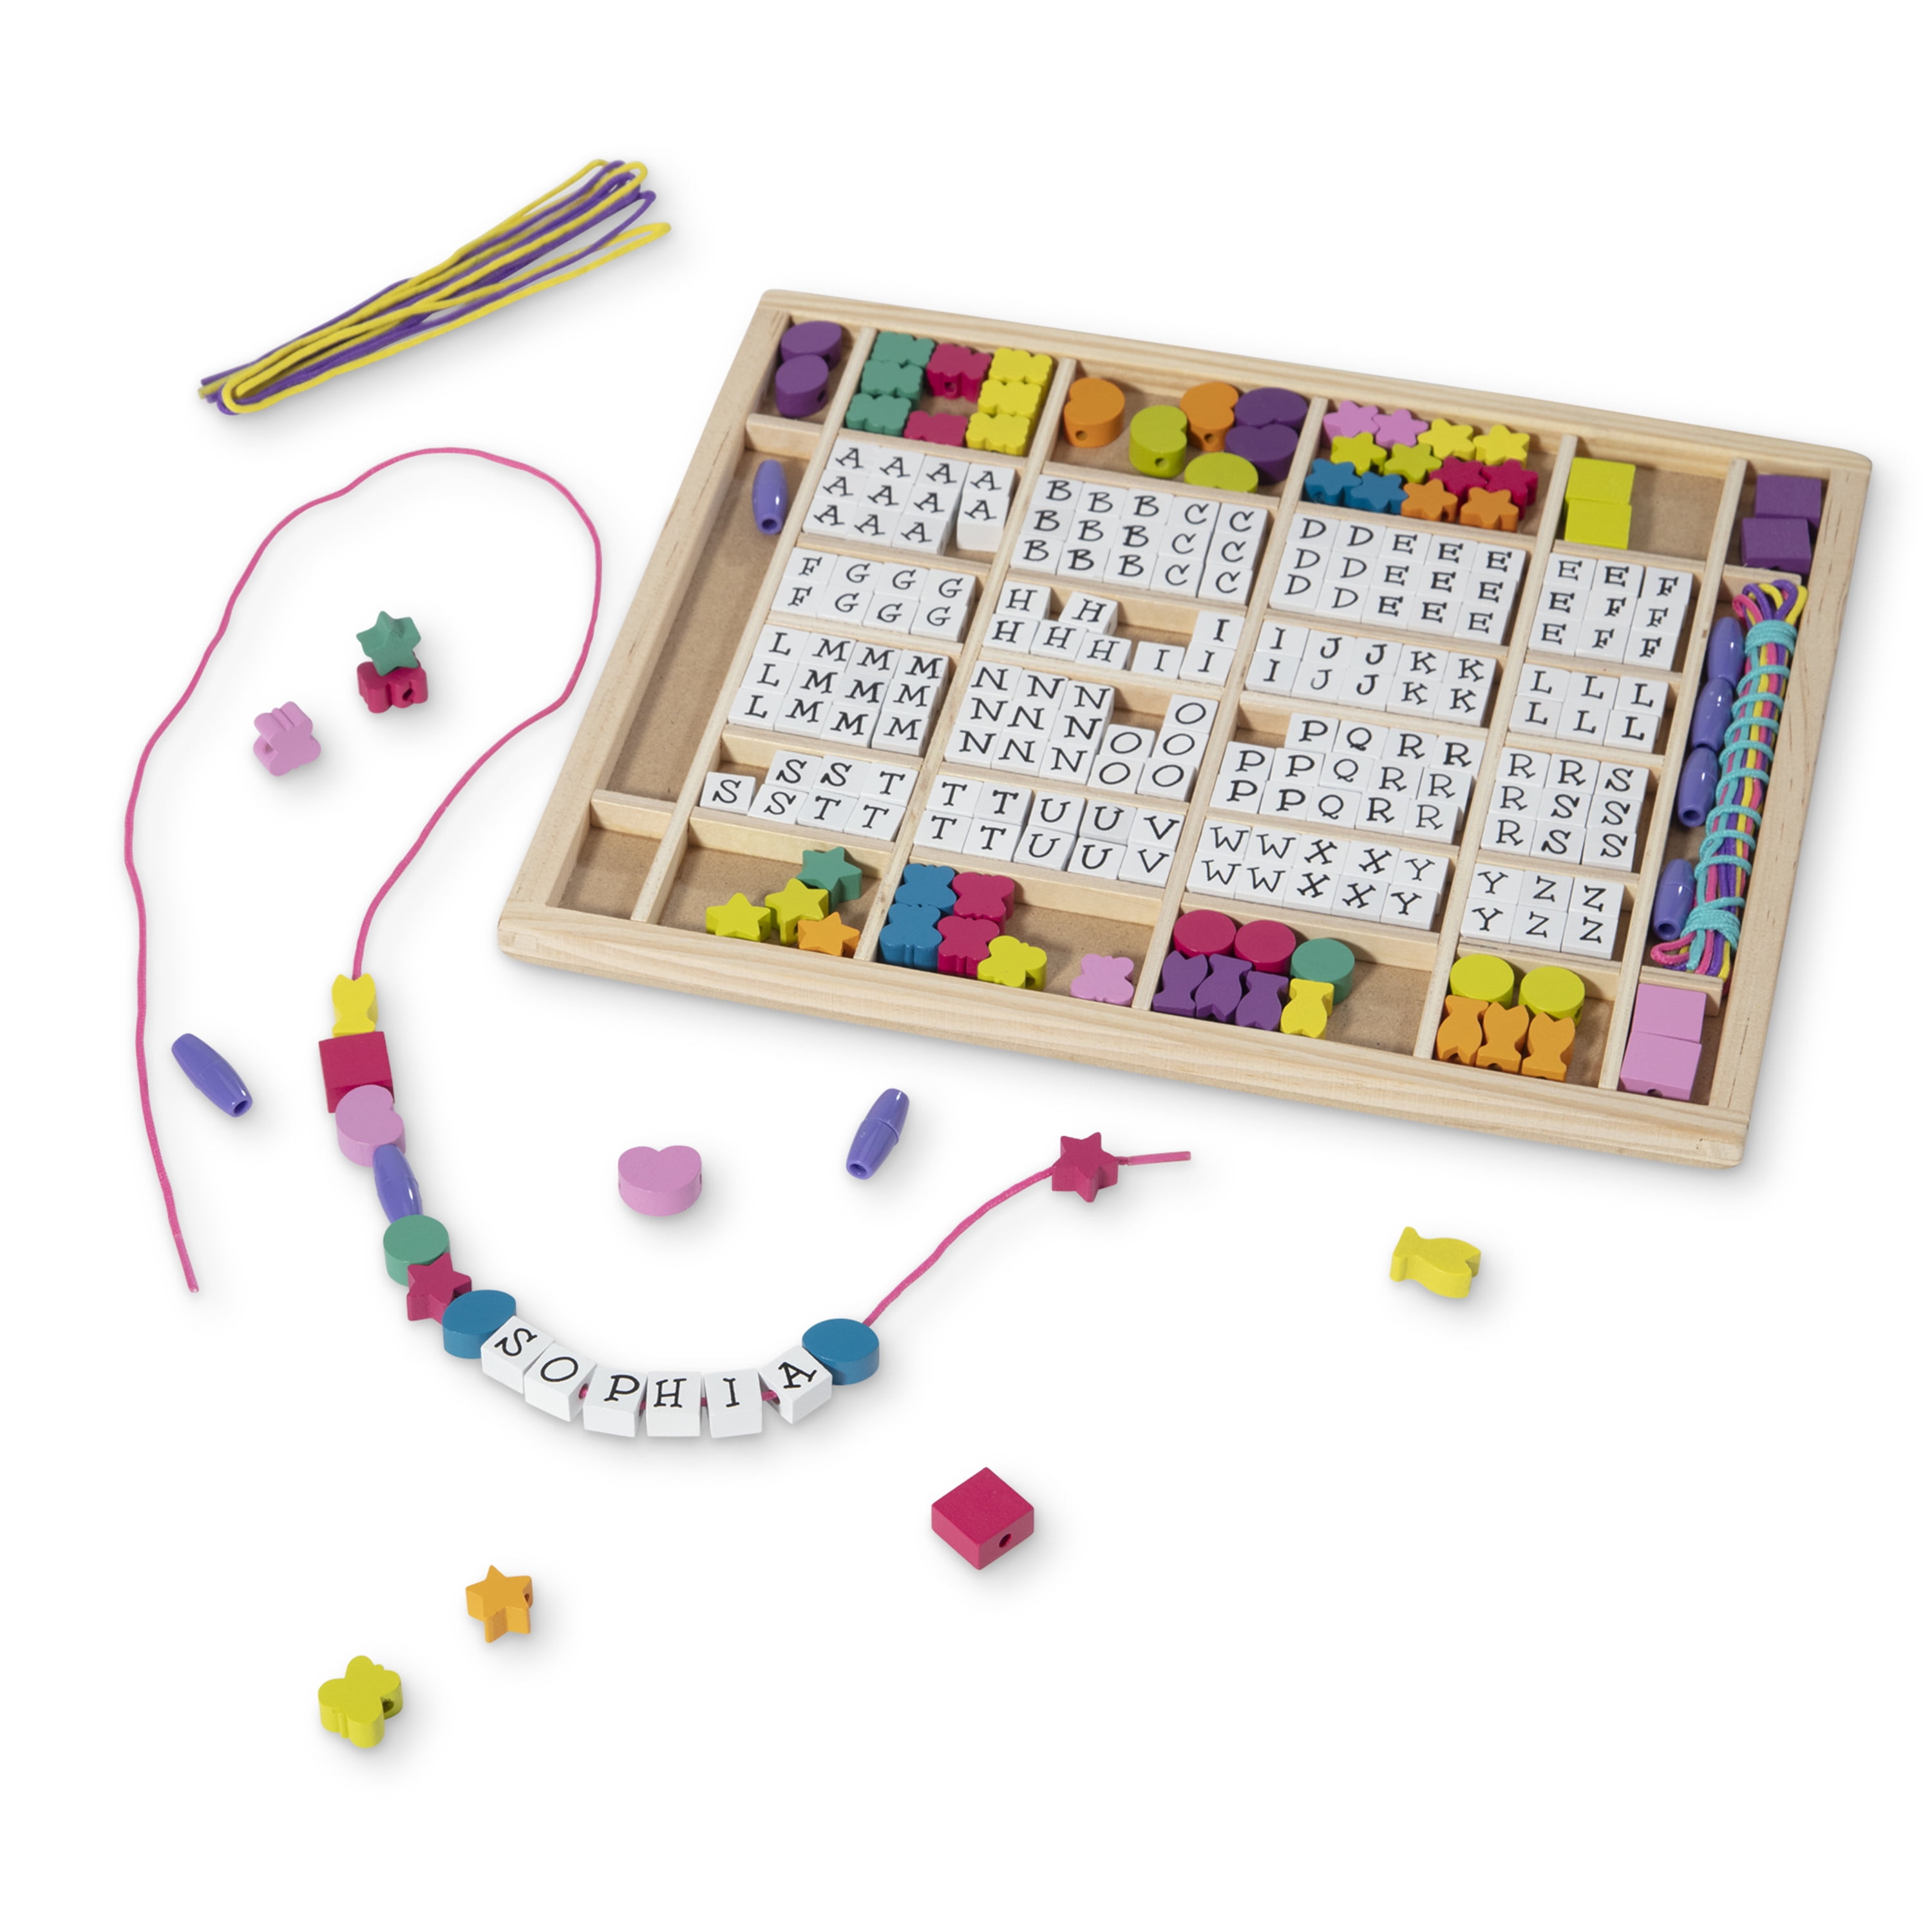 Wooden Alphabet Beads 50 Pcs – Craft For Kids